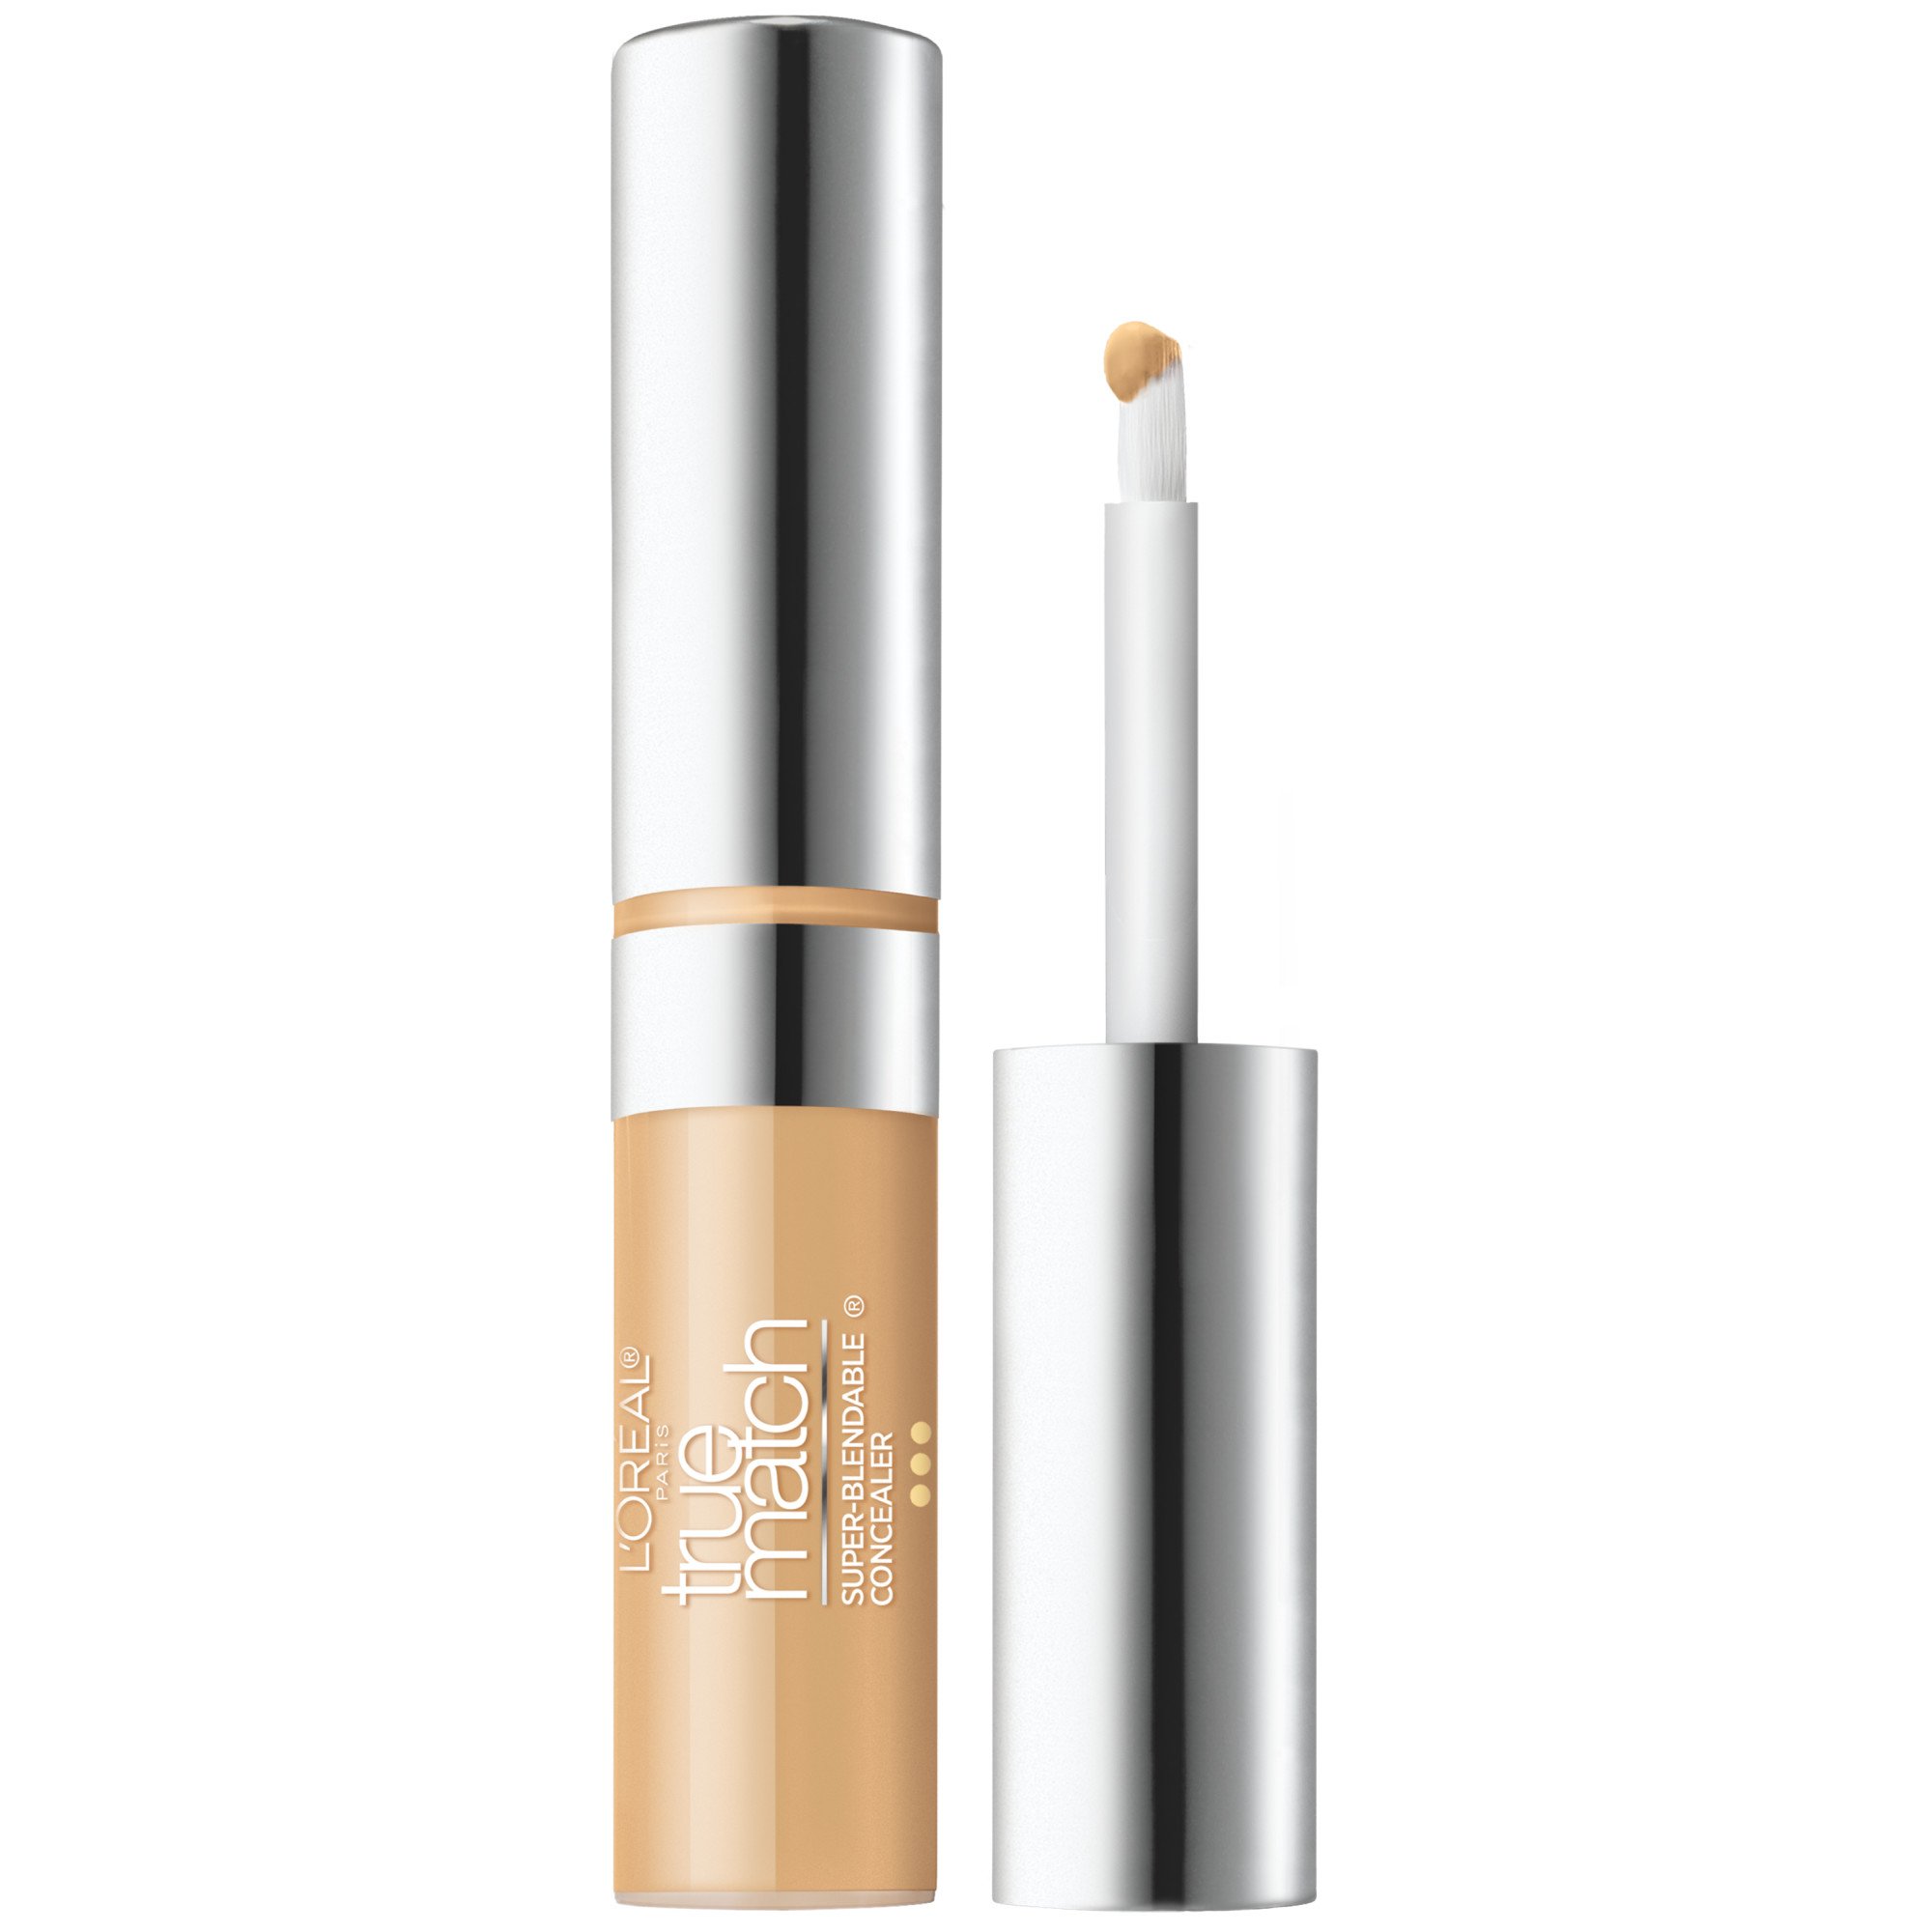 L'Oréal Paris True Match Super-Blendable Concealer Light Medium